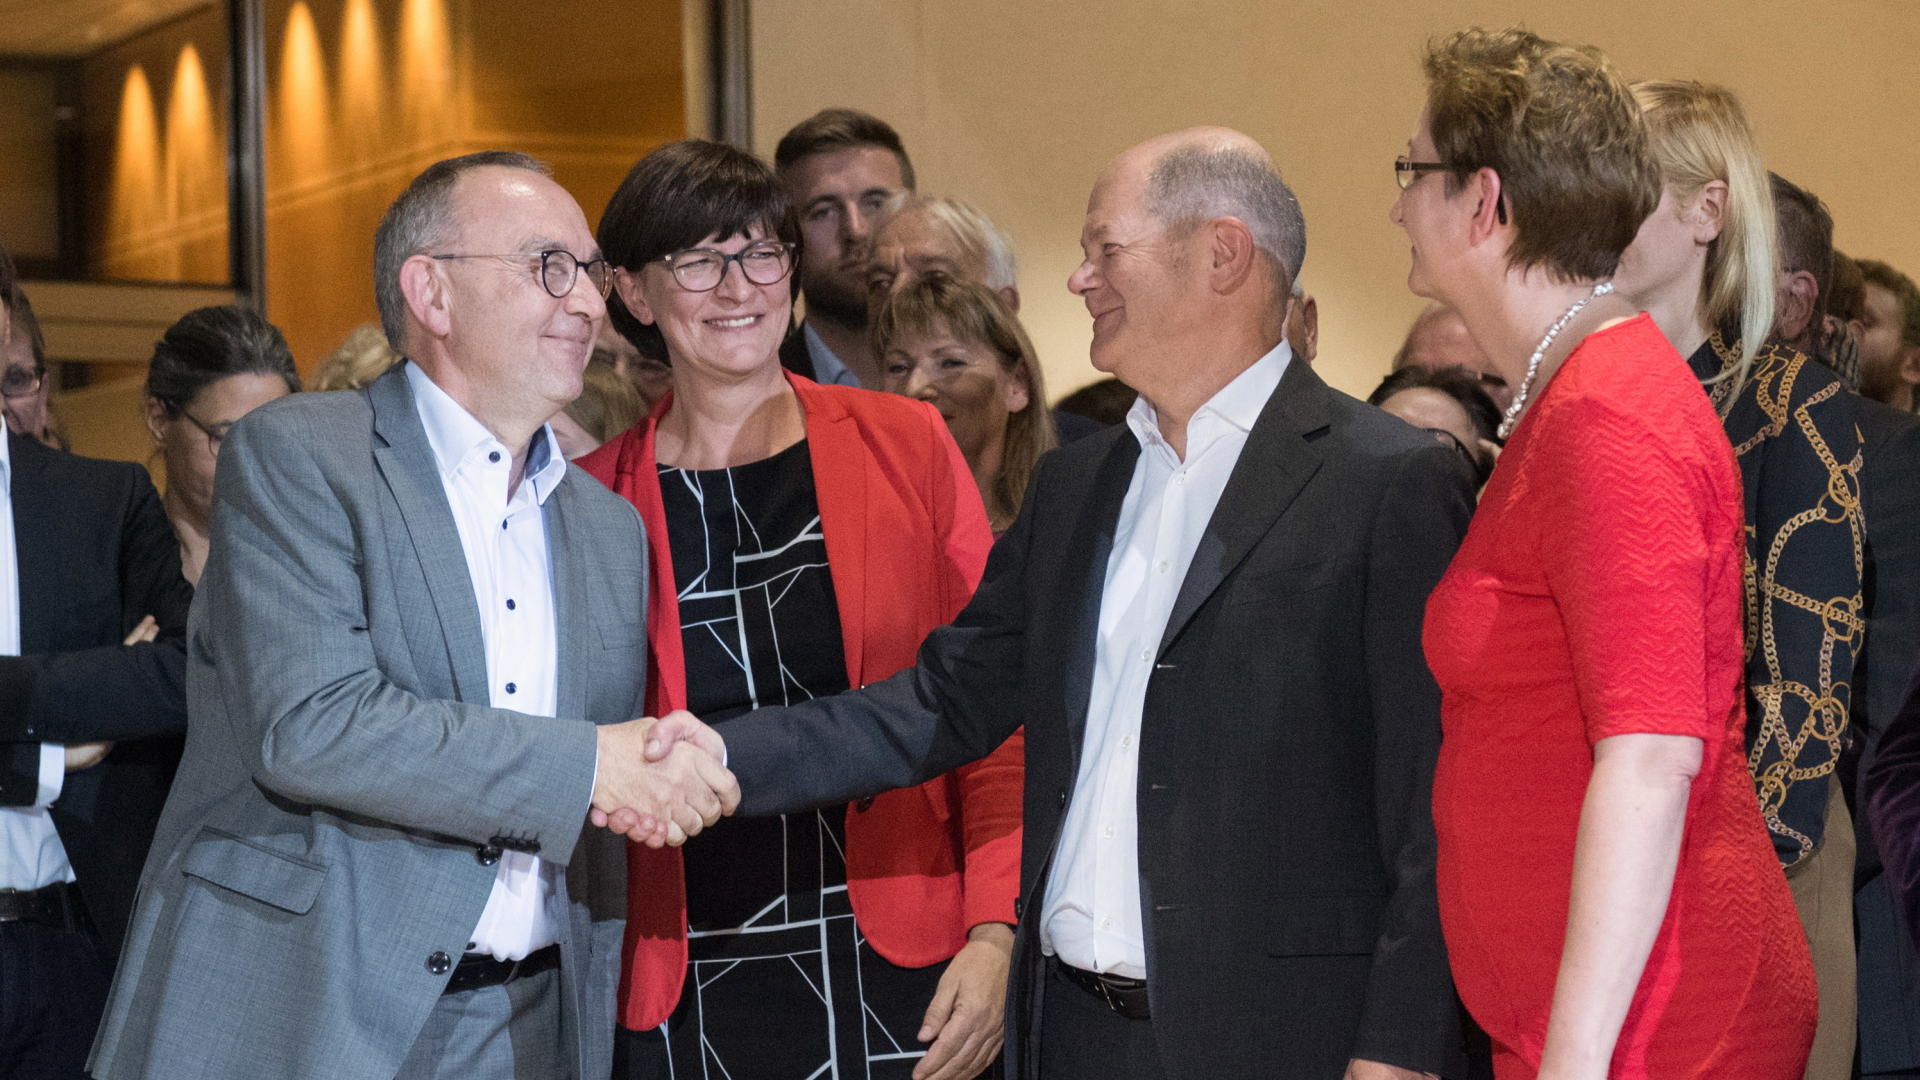  Die Kandidatenpaare Norbert Walter-Borjans (l) und Saskia Esken (2.v.l) sowie Olaf Scholz 2.v.r.) und Klara Geywitz (r) gratulieren einander zum Einzug in die Stichwahl. | dpa